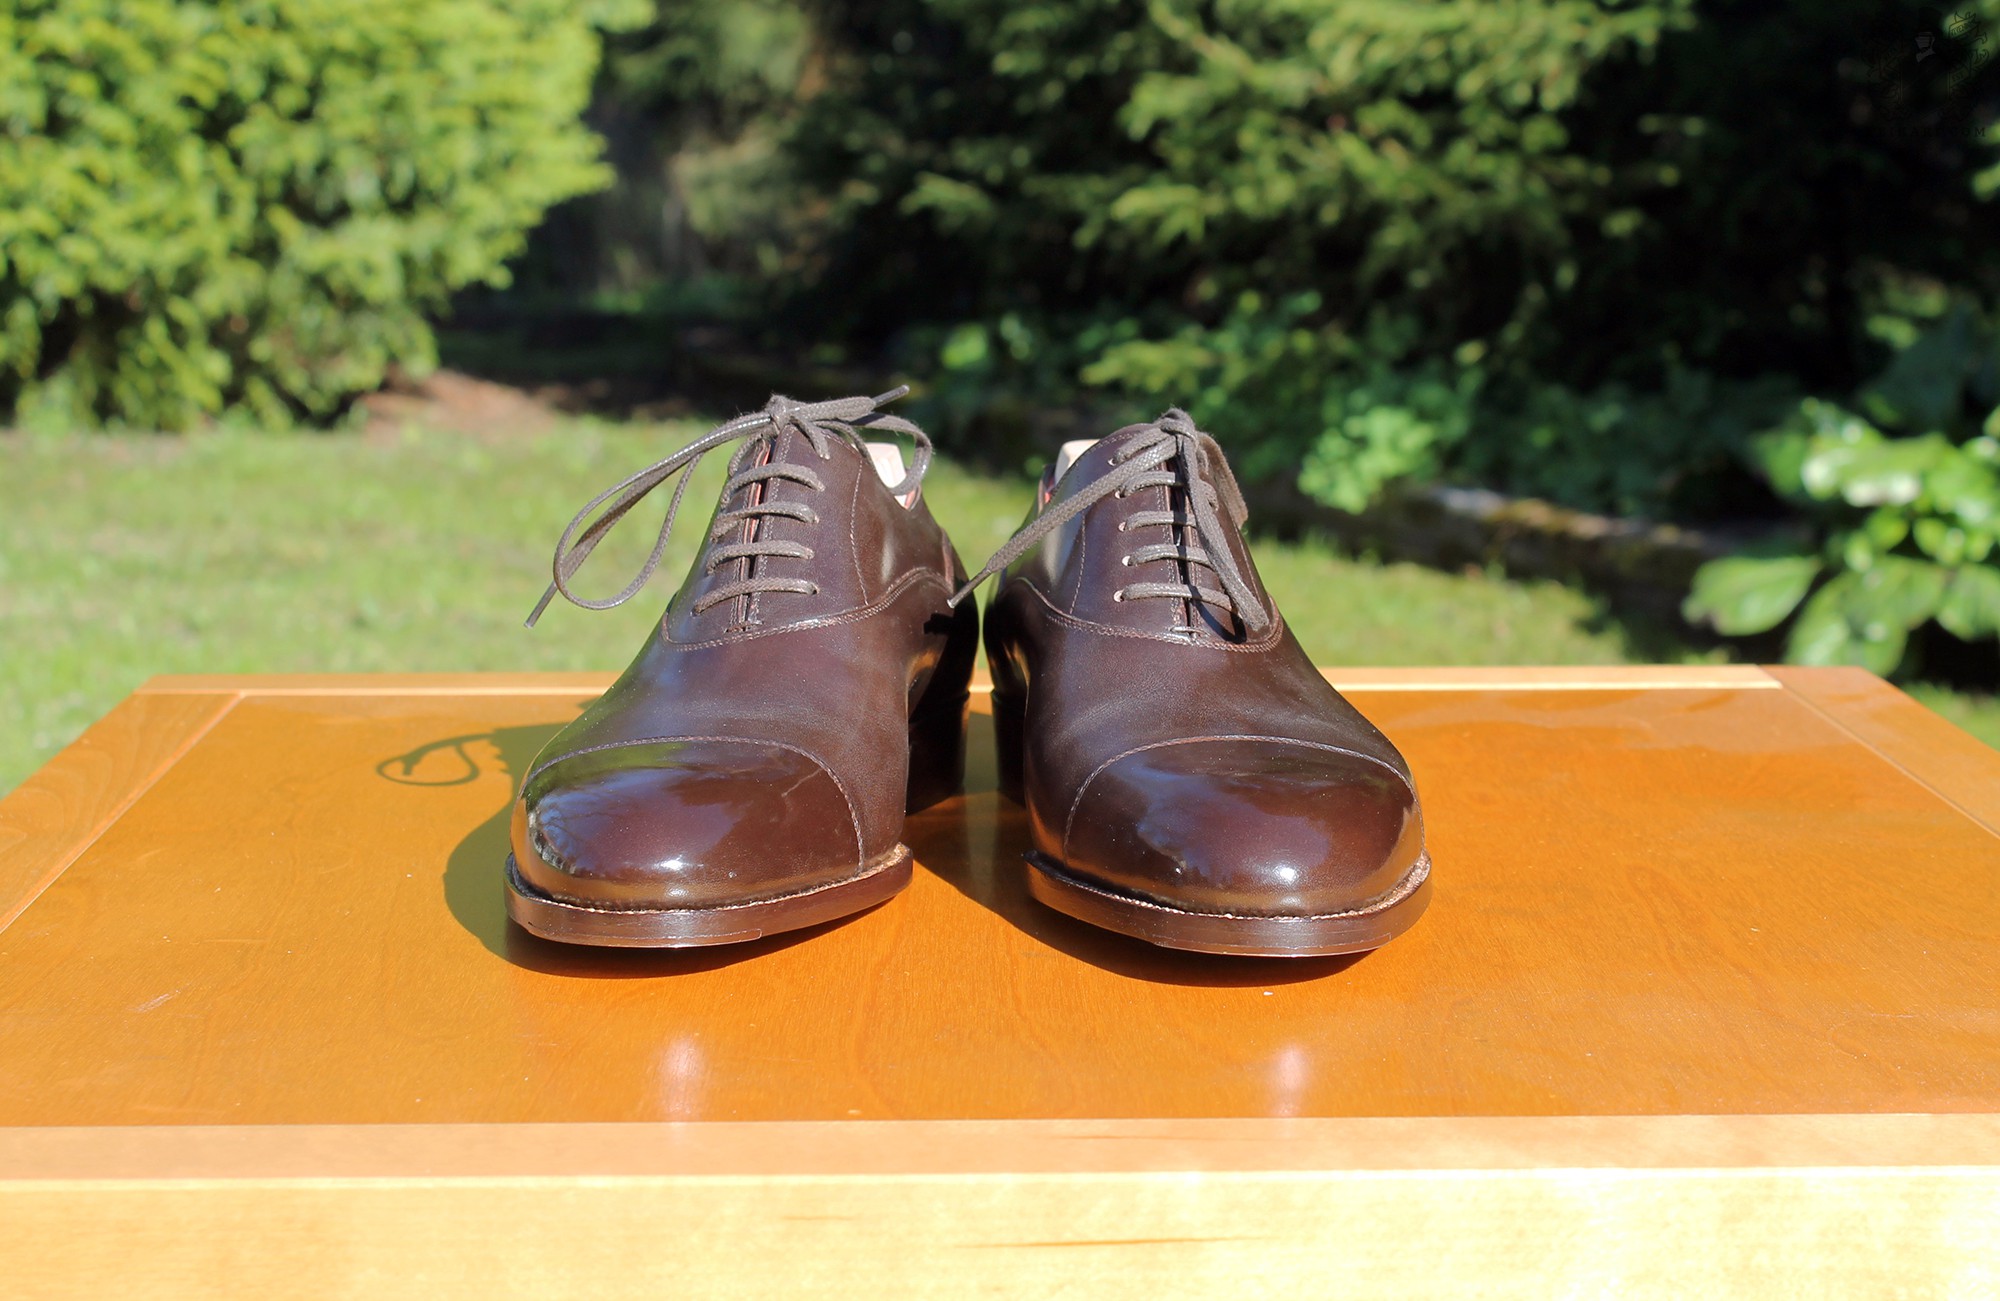 Anatomy_of_Saint_Crispin's_shoes_at_Keikari_dot_com06